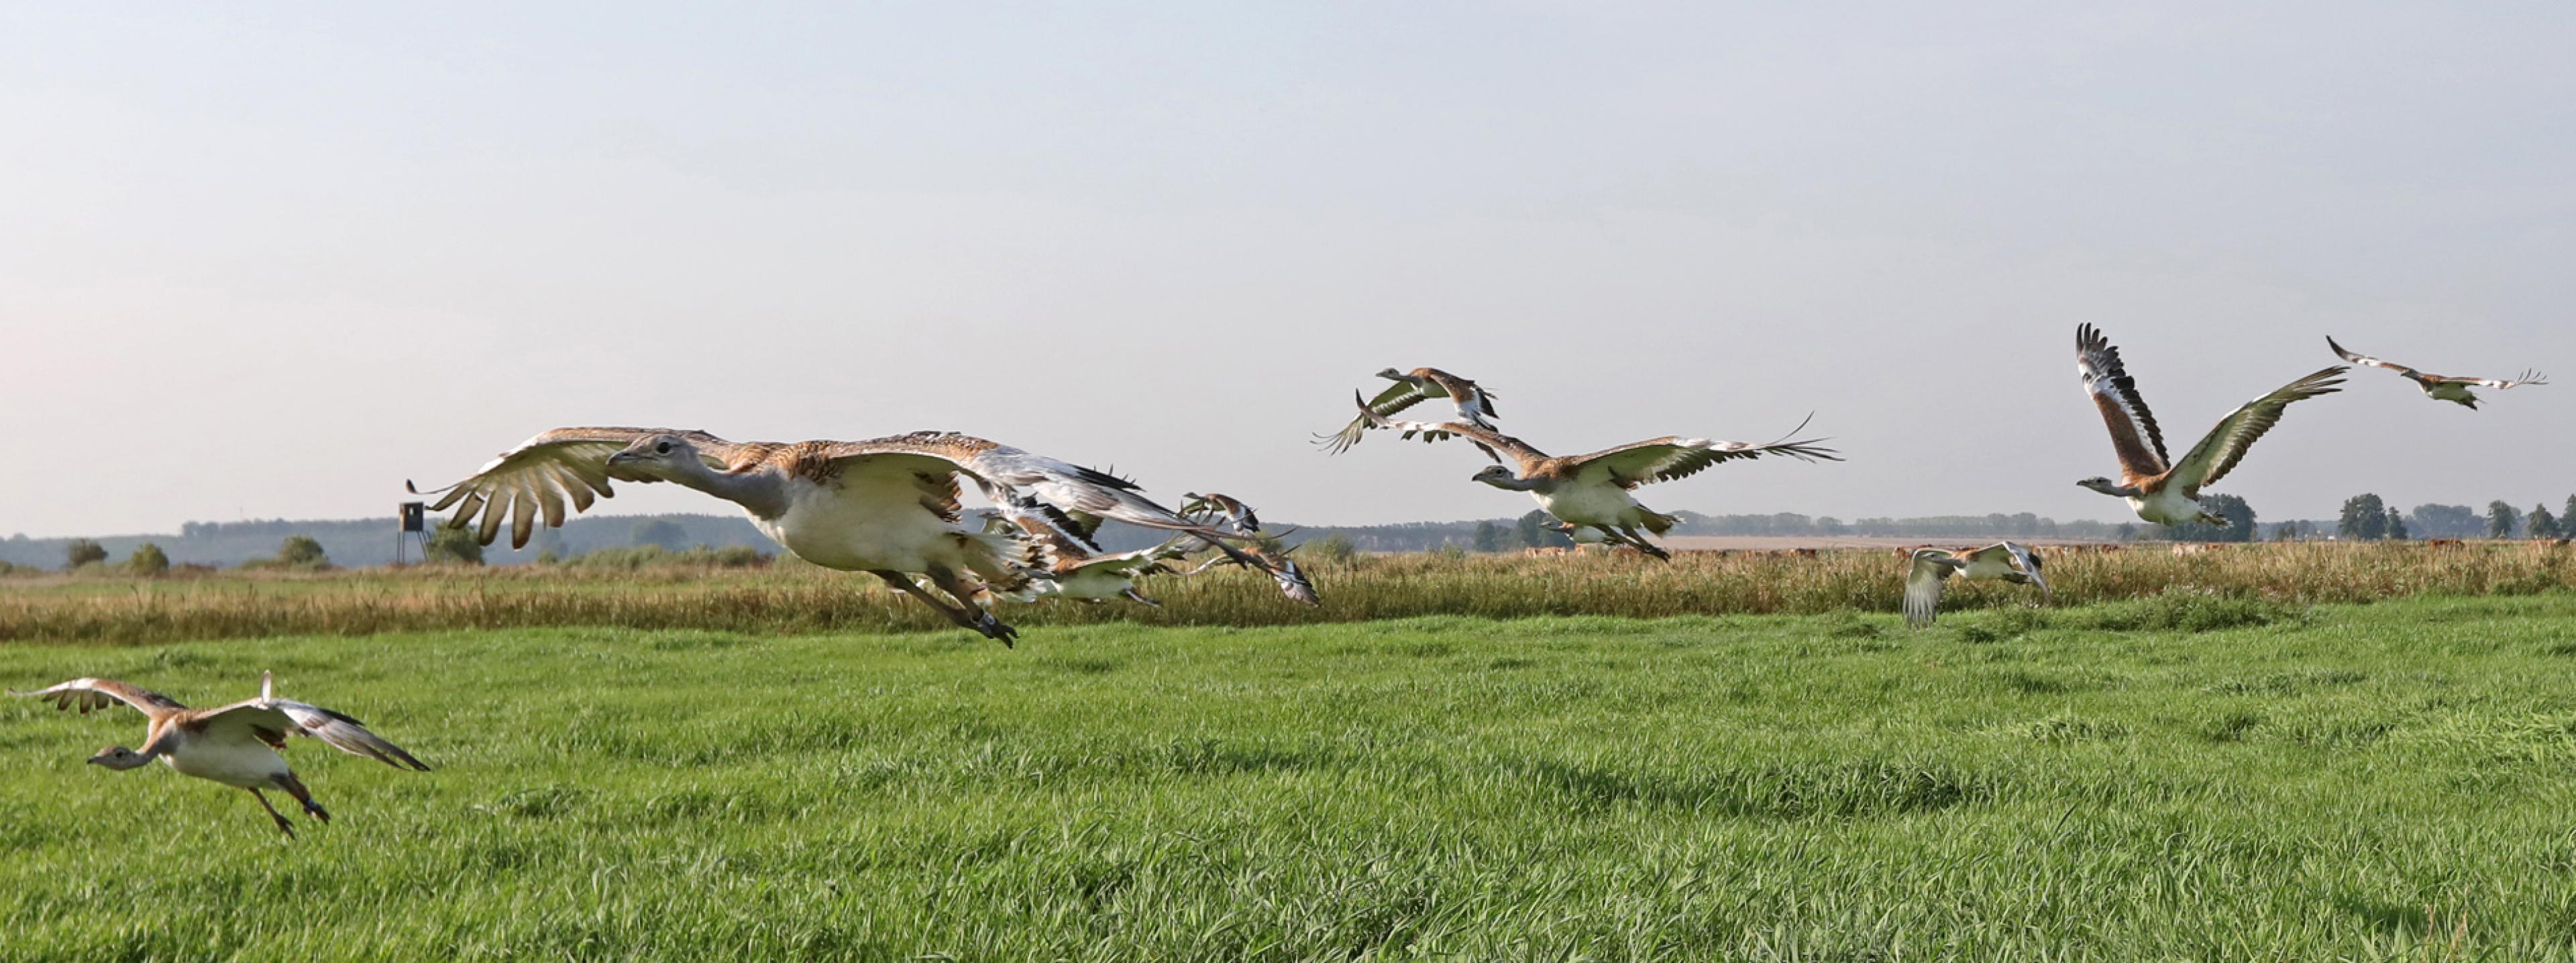 Eine Gruppe junger, gerade flugfähiger Großtrappen in einem Naturschutzgebiet fliegt auf den Fotografen zu